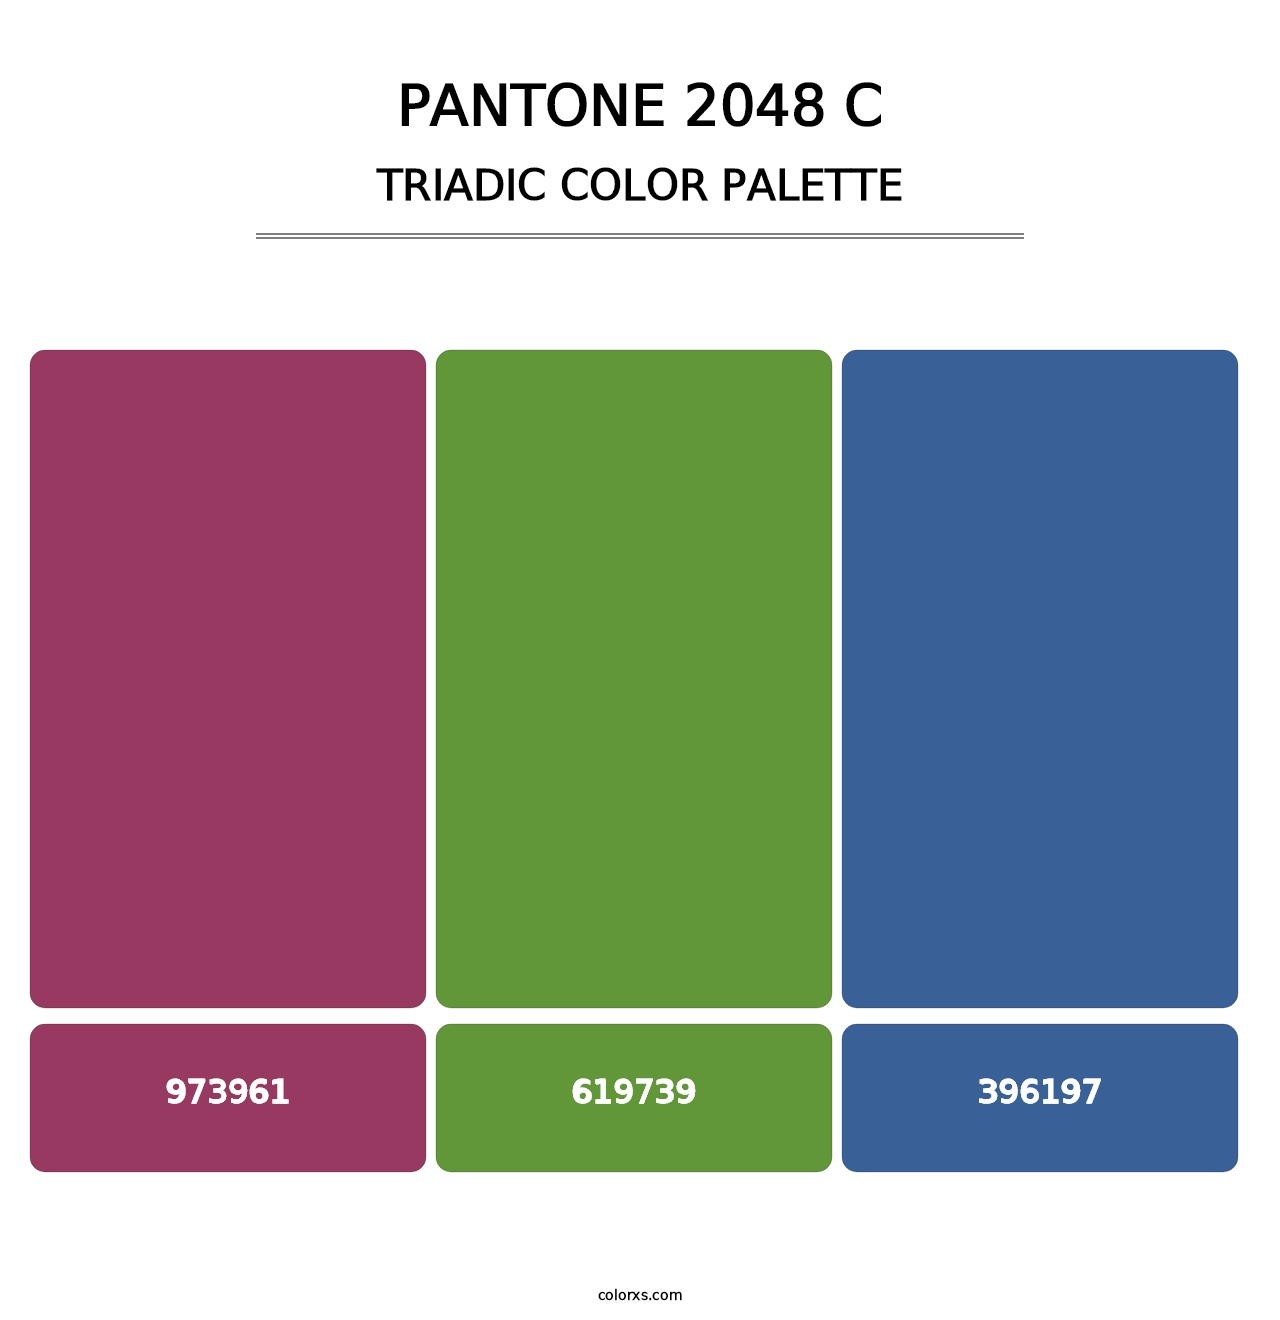 PANTONE 2048 C - Triadic Color Palette